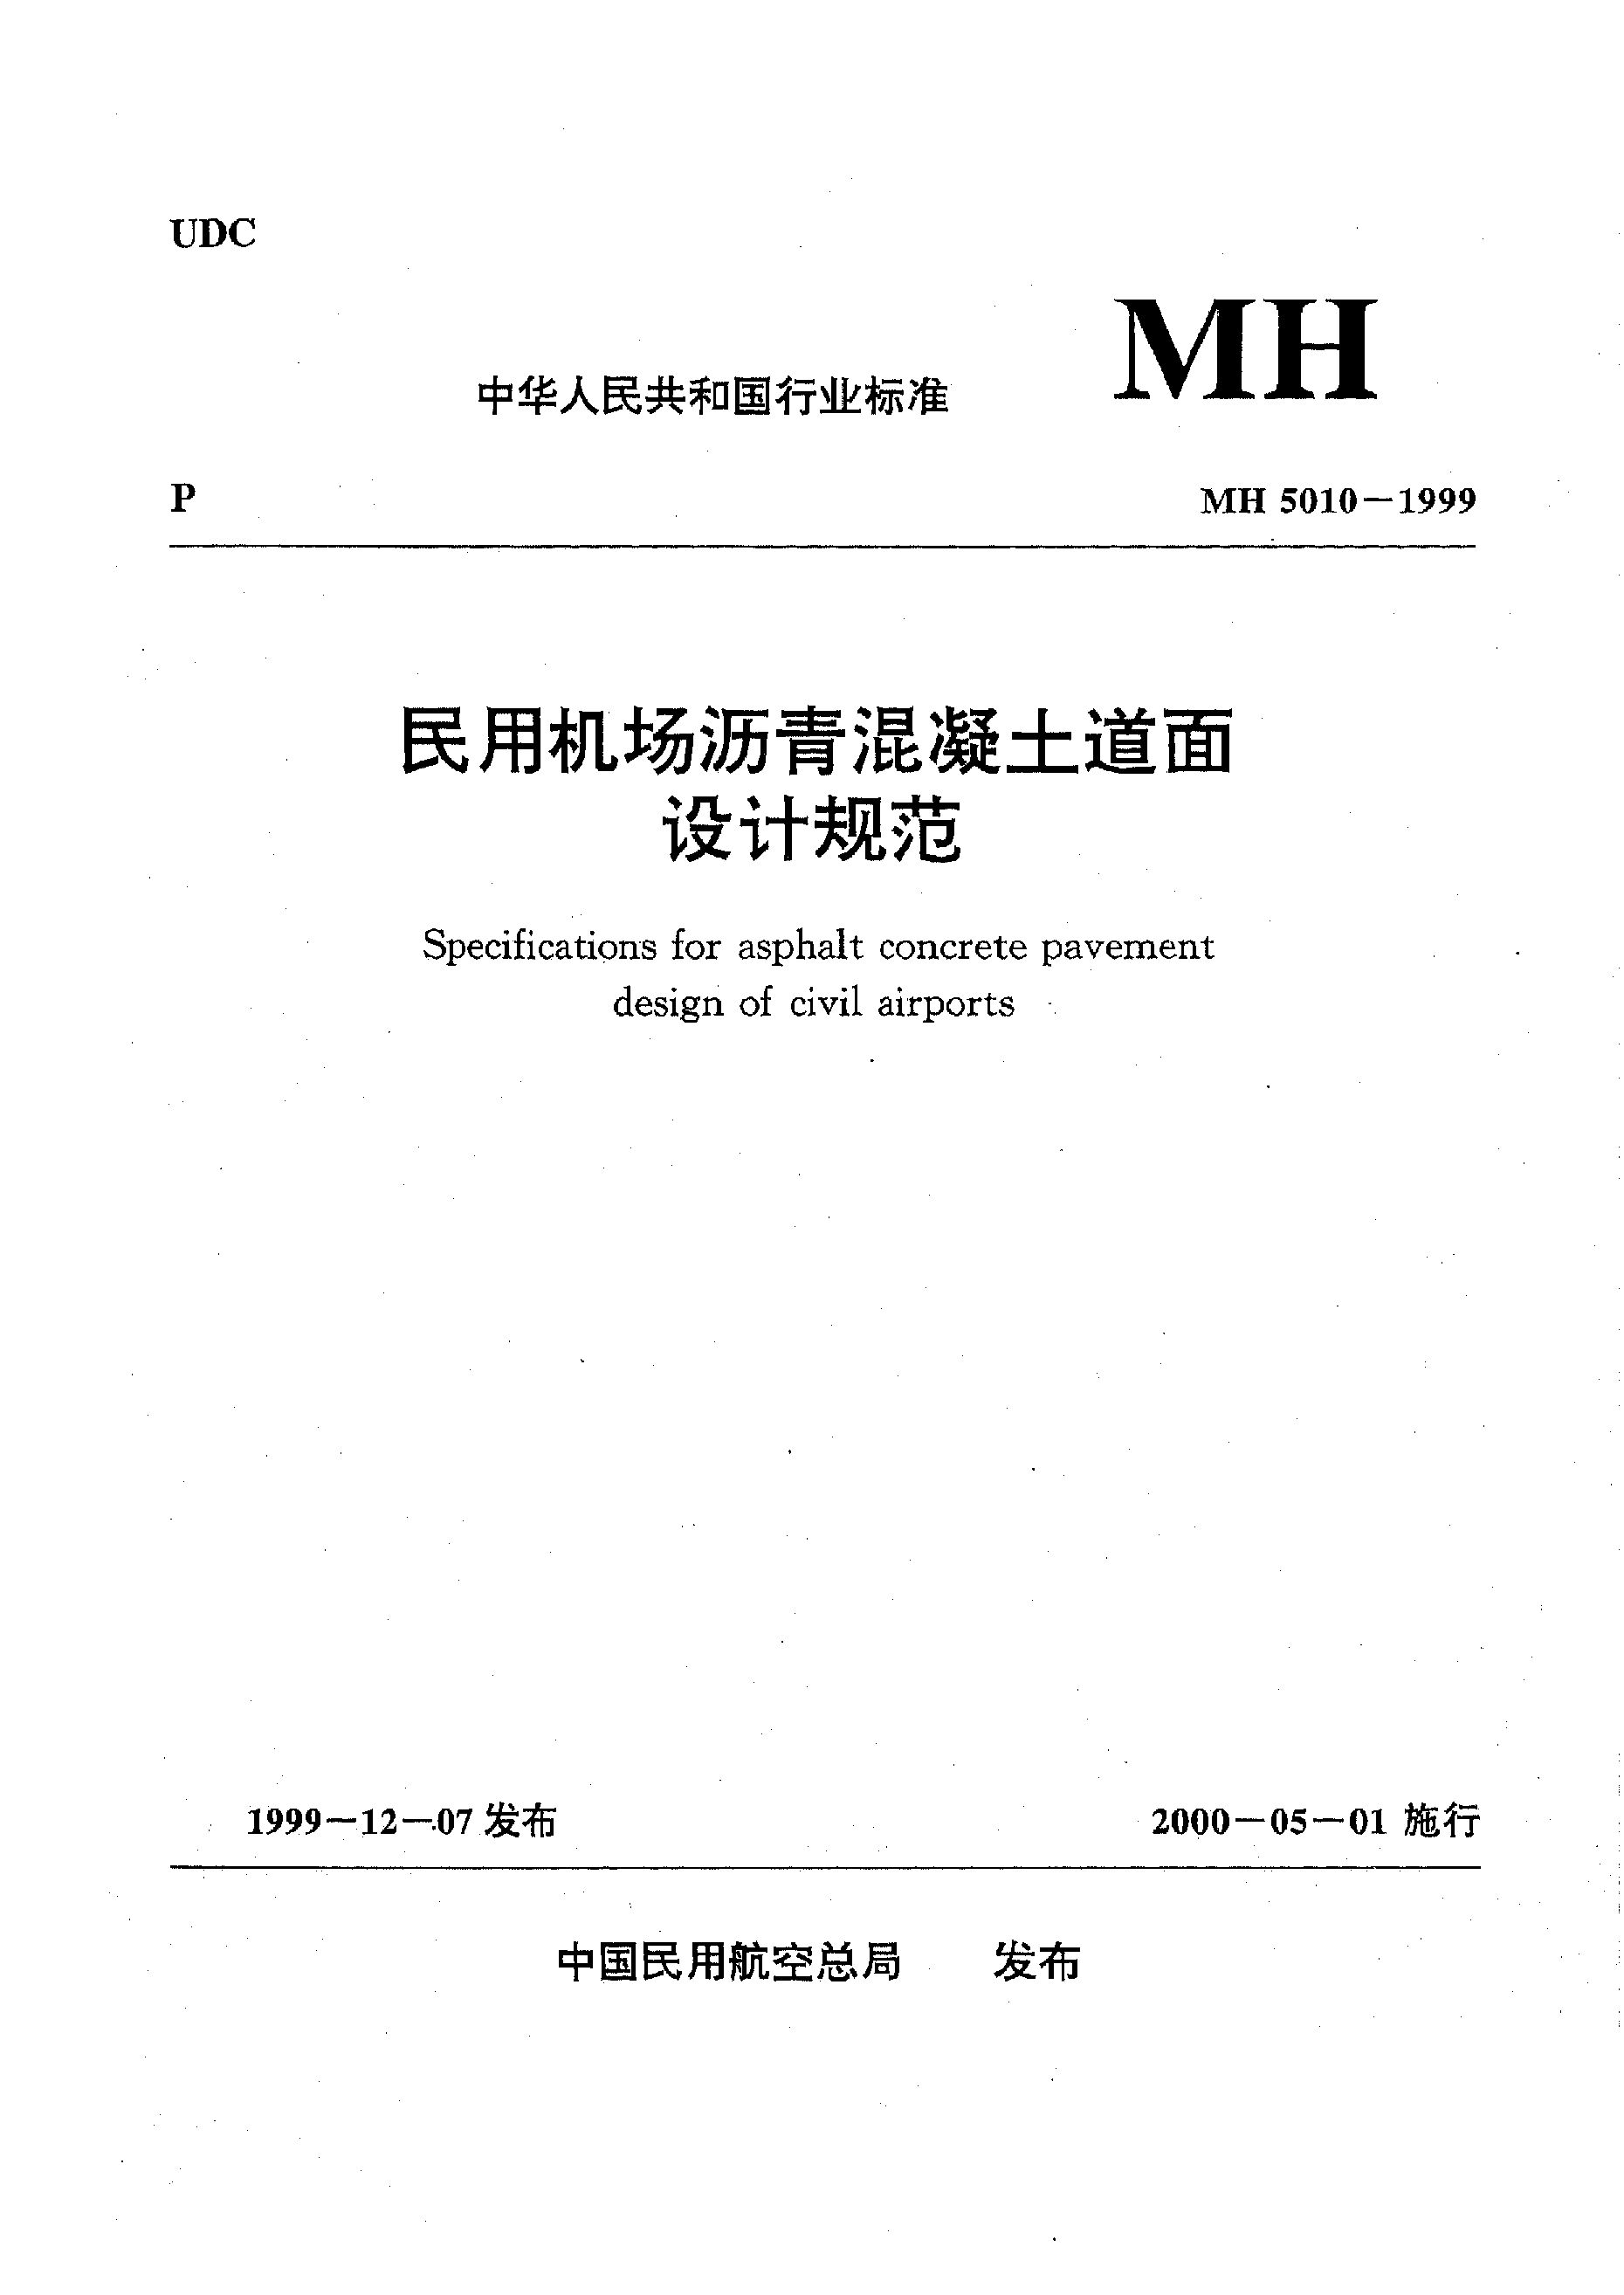 MH 5010-1999封面图